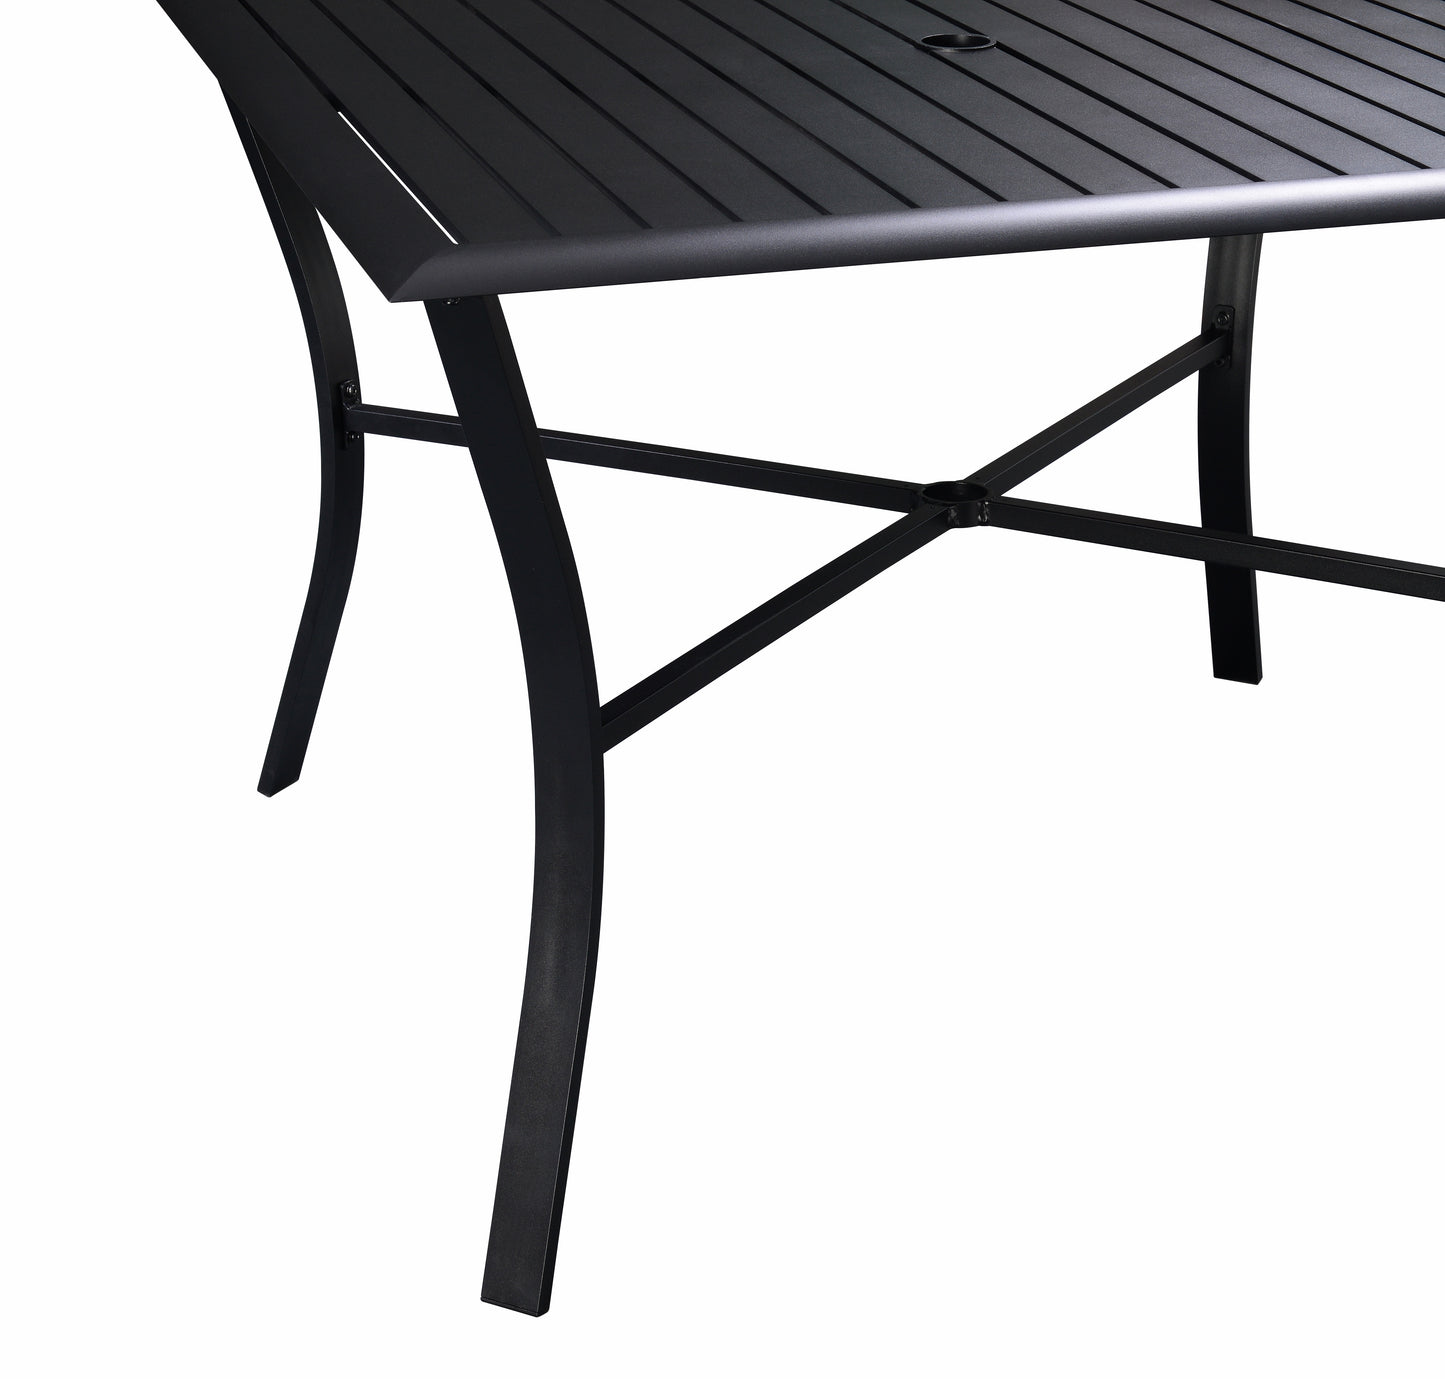 Aluminum Square Slats Table 42"- Black